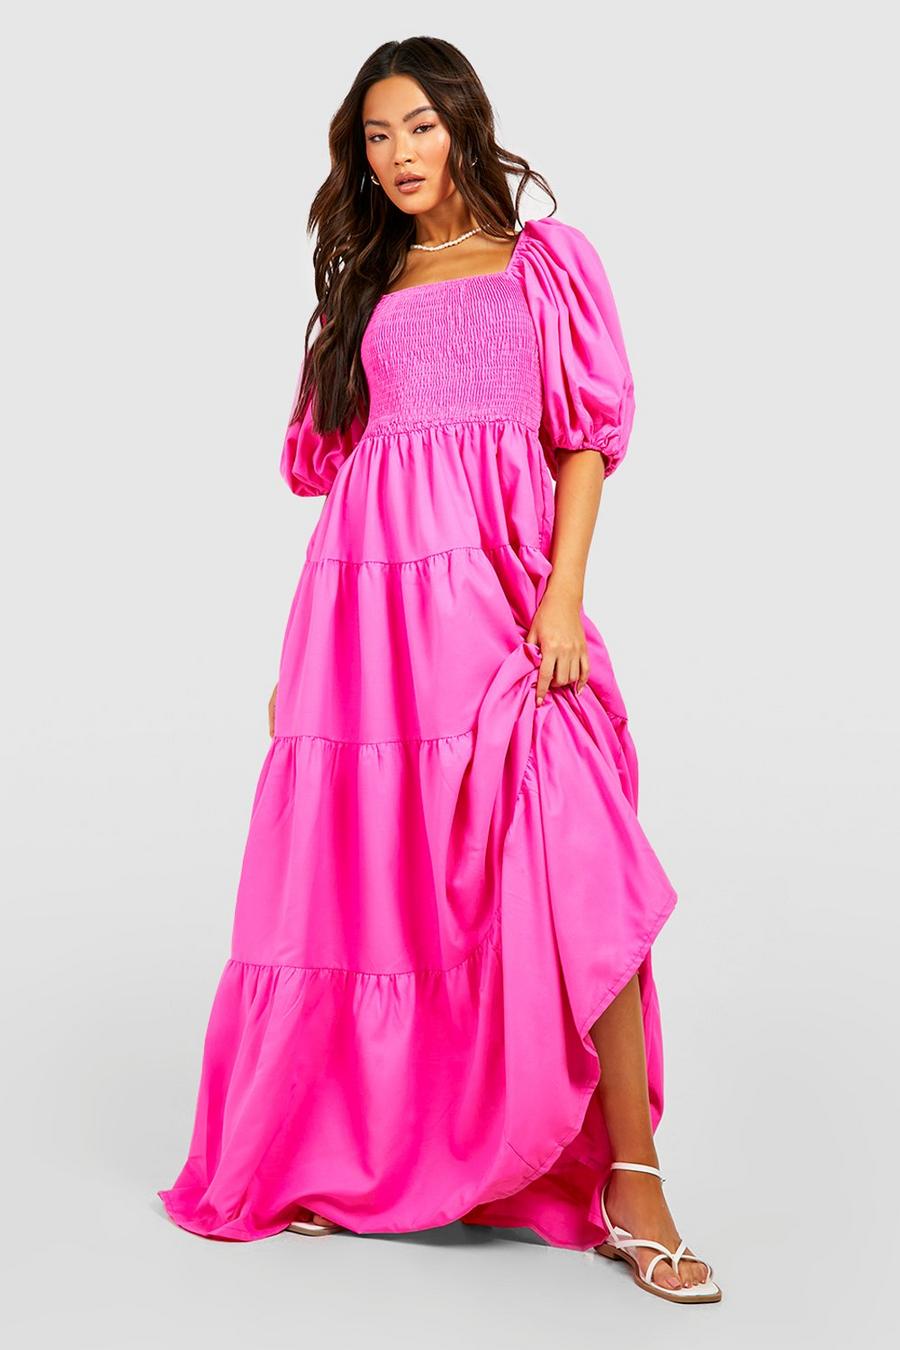 Hot pink שמלת סמוק מקסי עם כיווצים ושרוולים תפוחים במיוחד